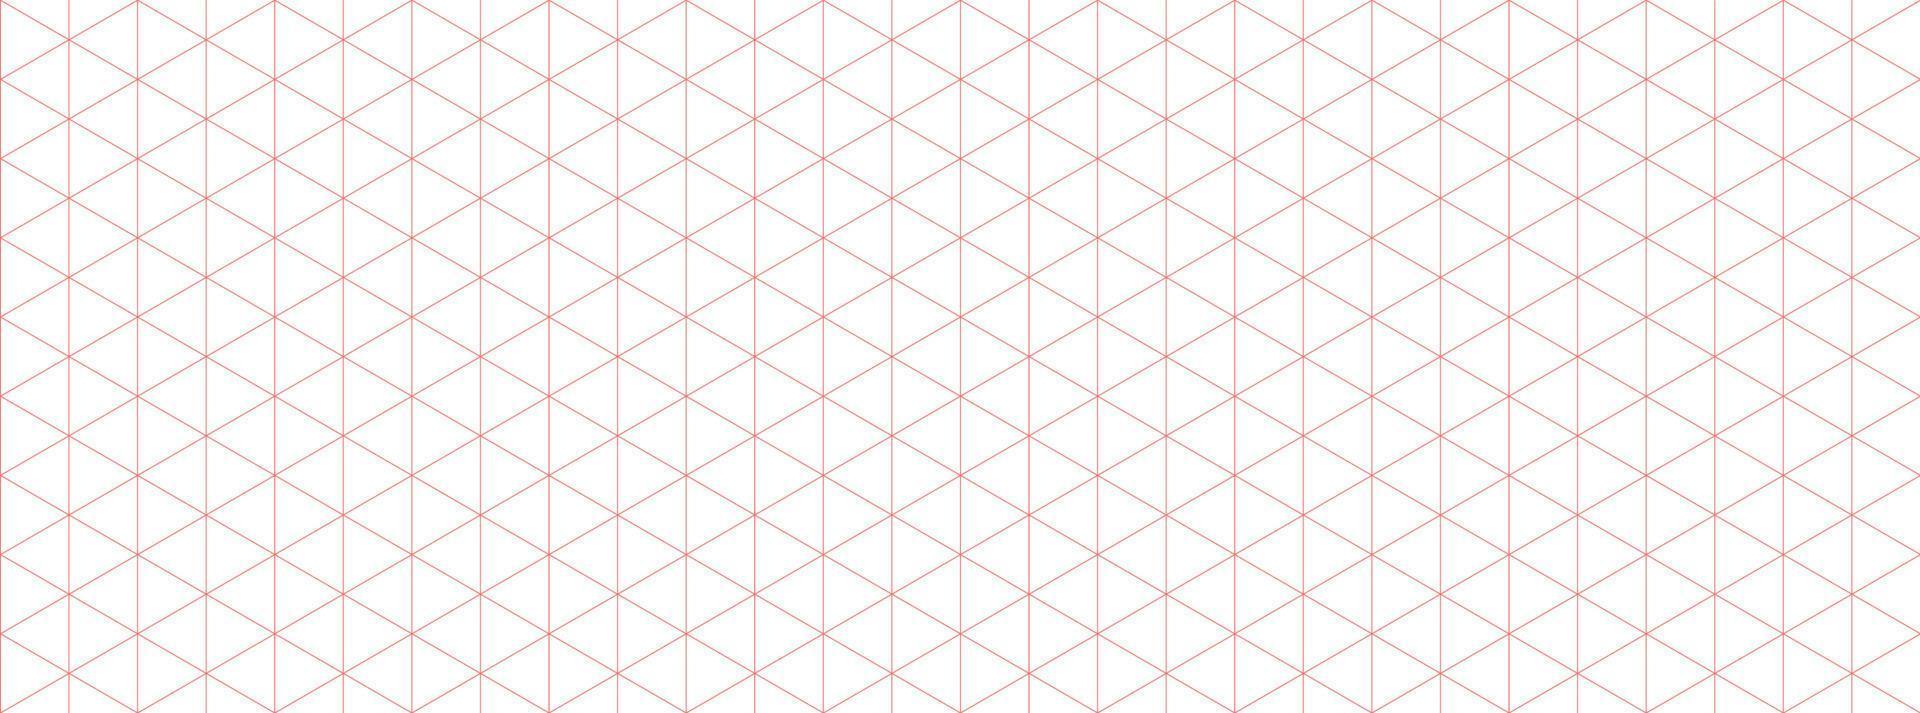 oranje isometrische rooster diagram papier achtergrond. naadloos patroon gids achtergrond. desigh voor bouwkunde of mechanisch lay-out tekening. vector illustratie